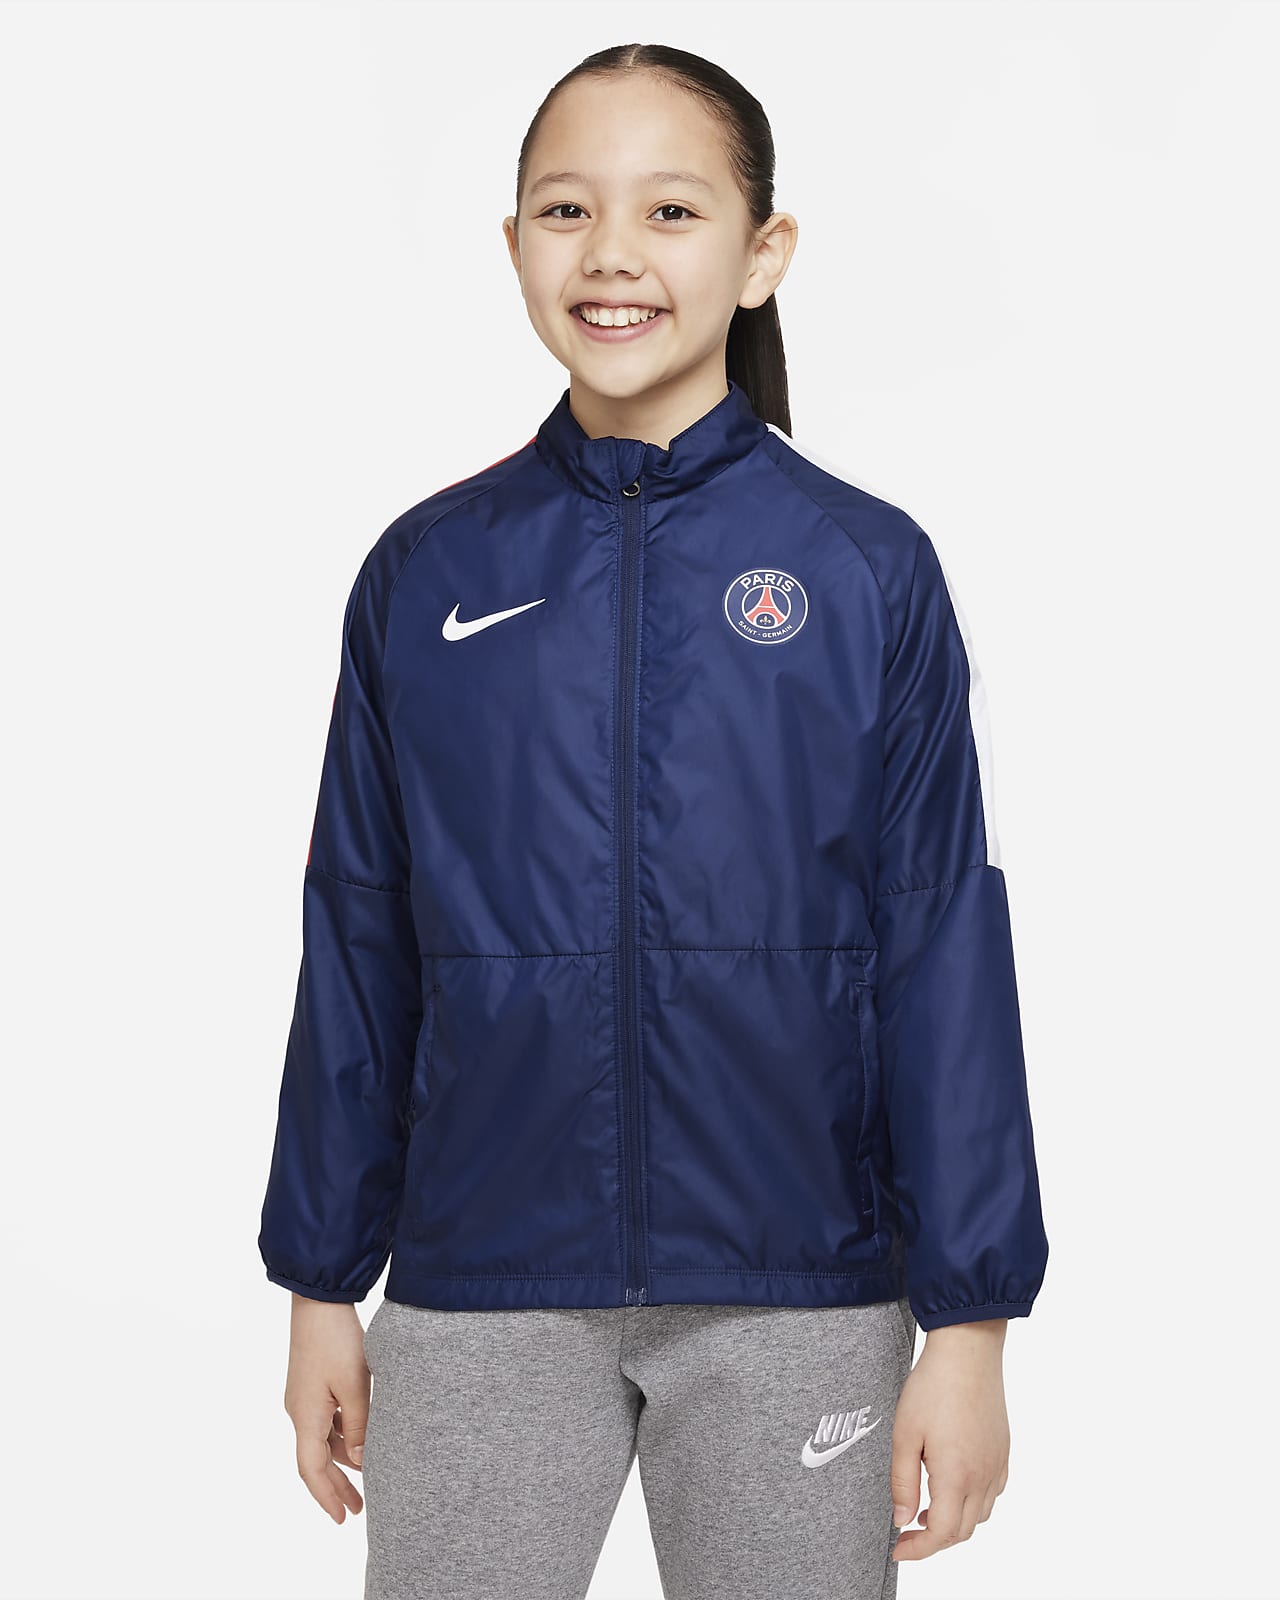 Paris Saint-Germain Repel Academy AWF Older Kids' Football Jacket